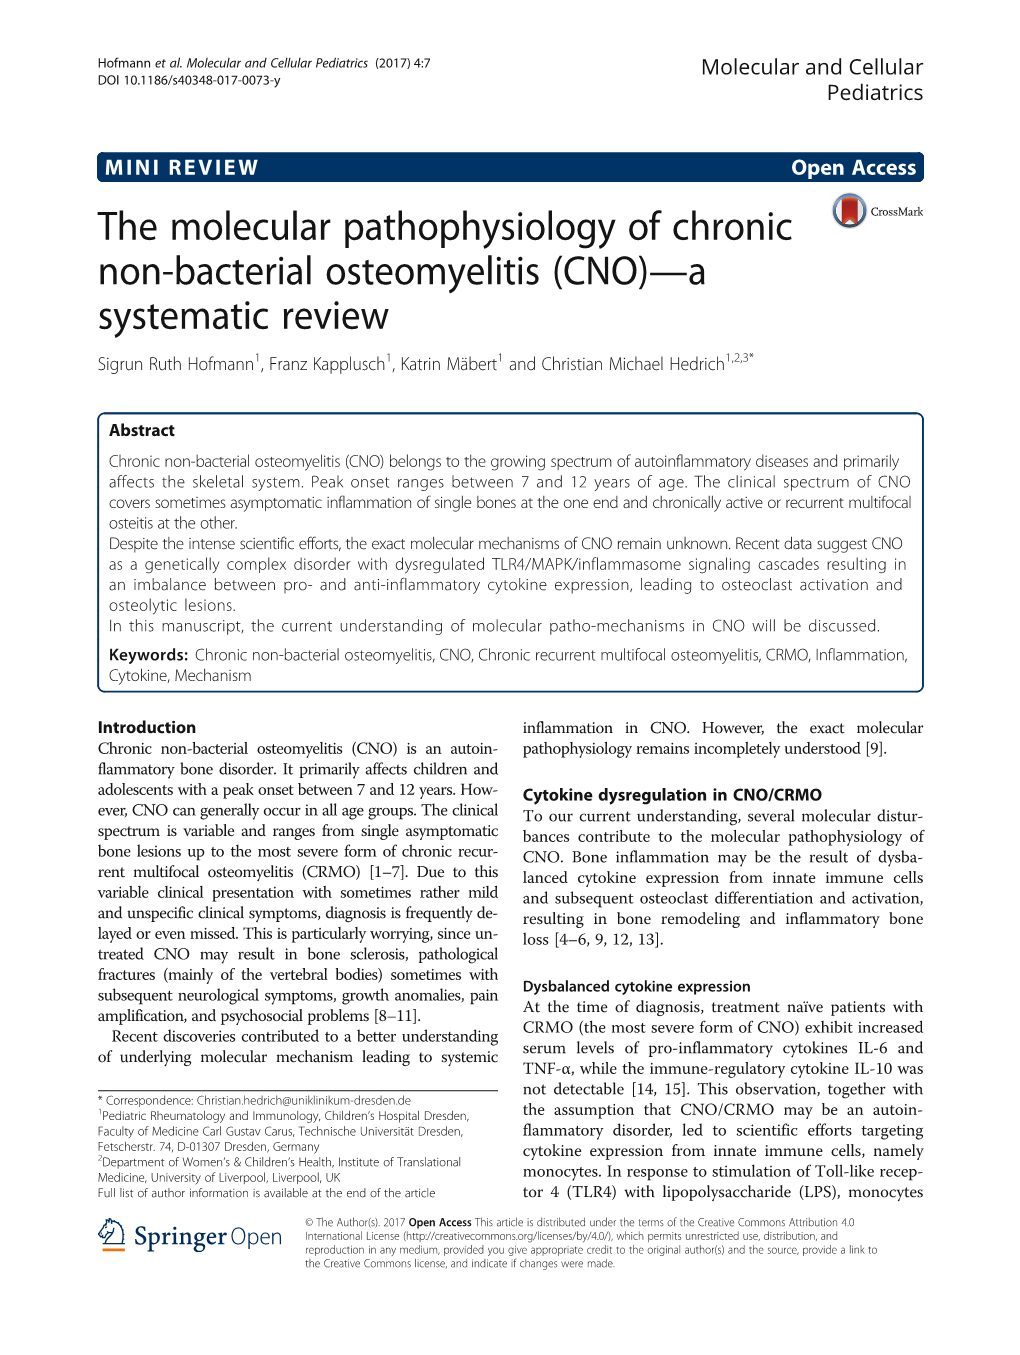 The Molecular Pathophysiology of Chronic Non-Bacterial Osteomyelitis